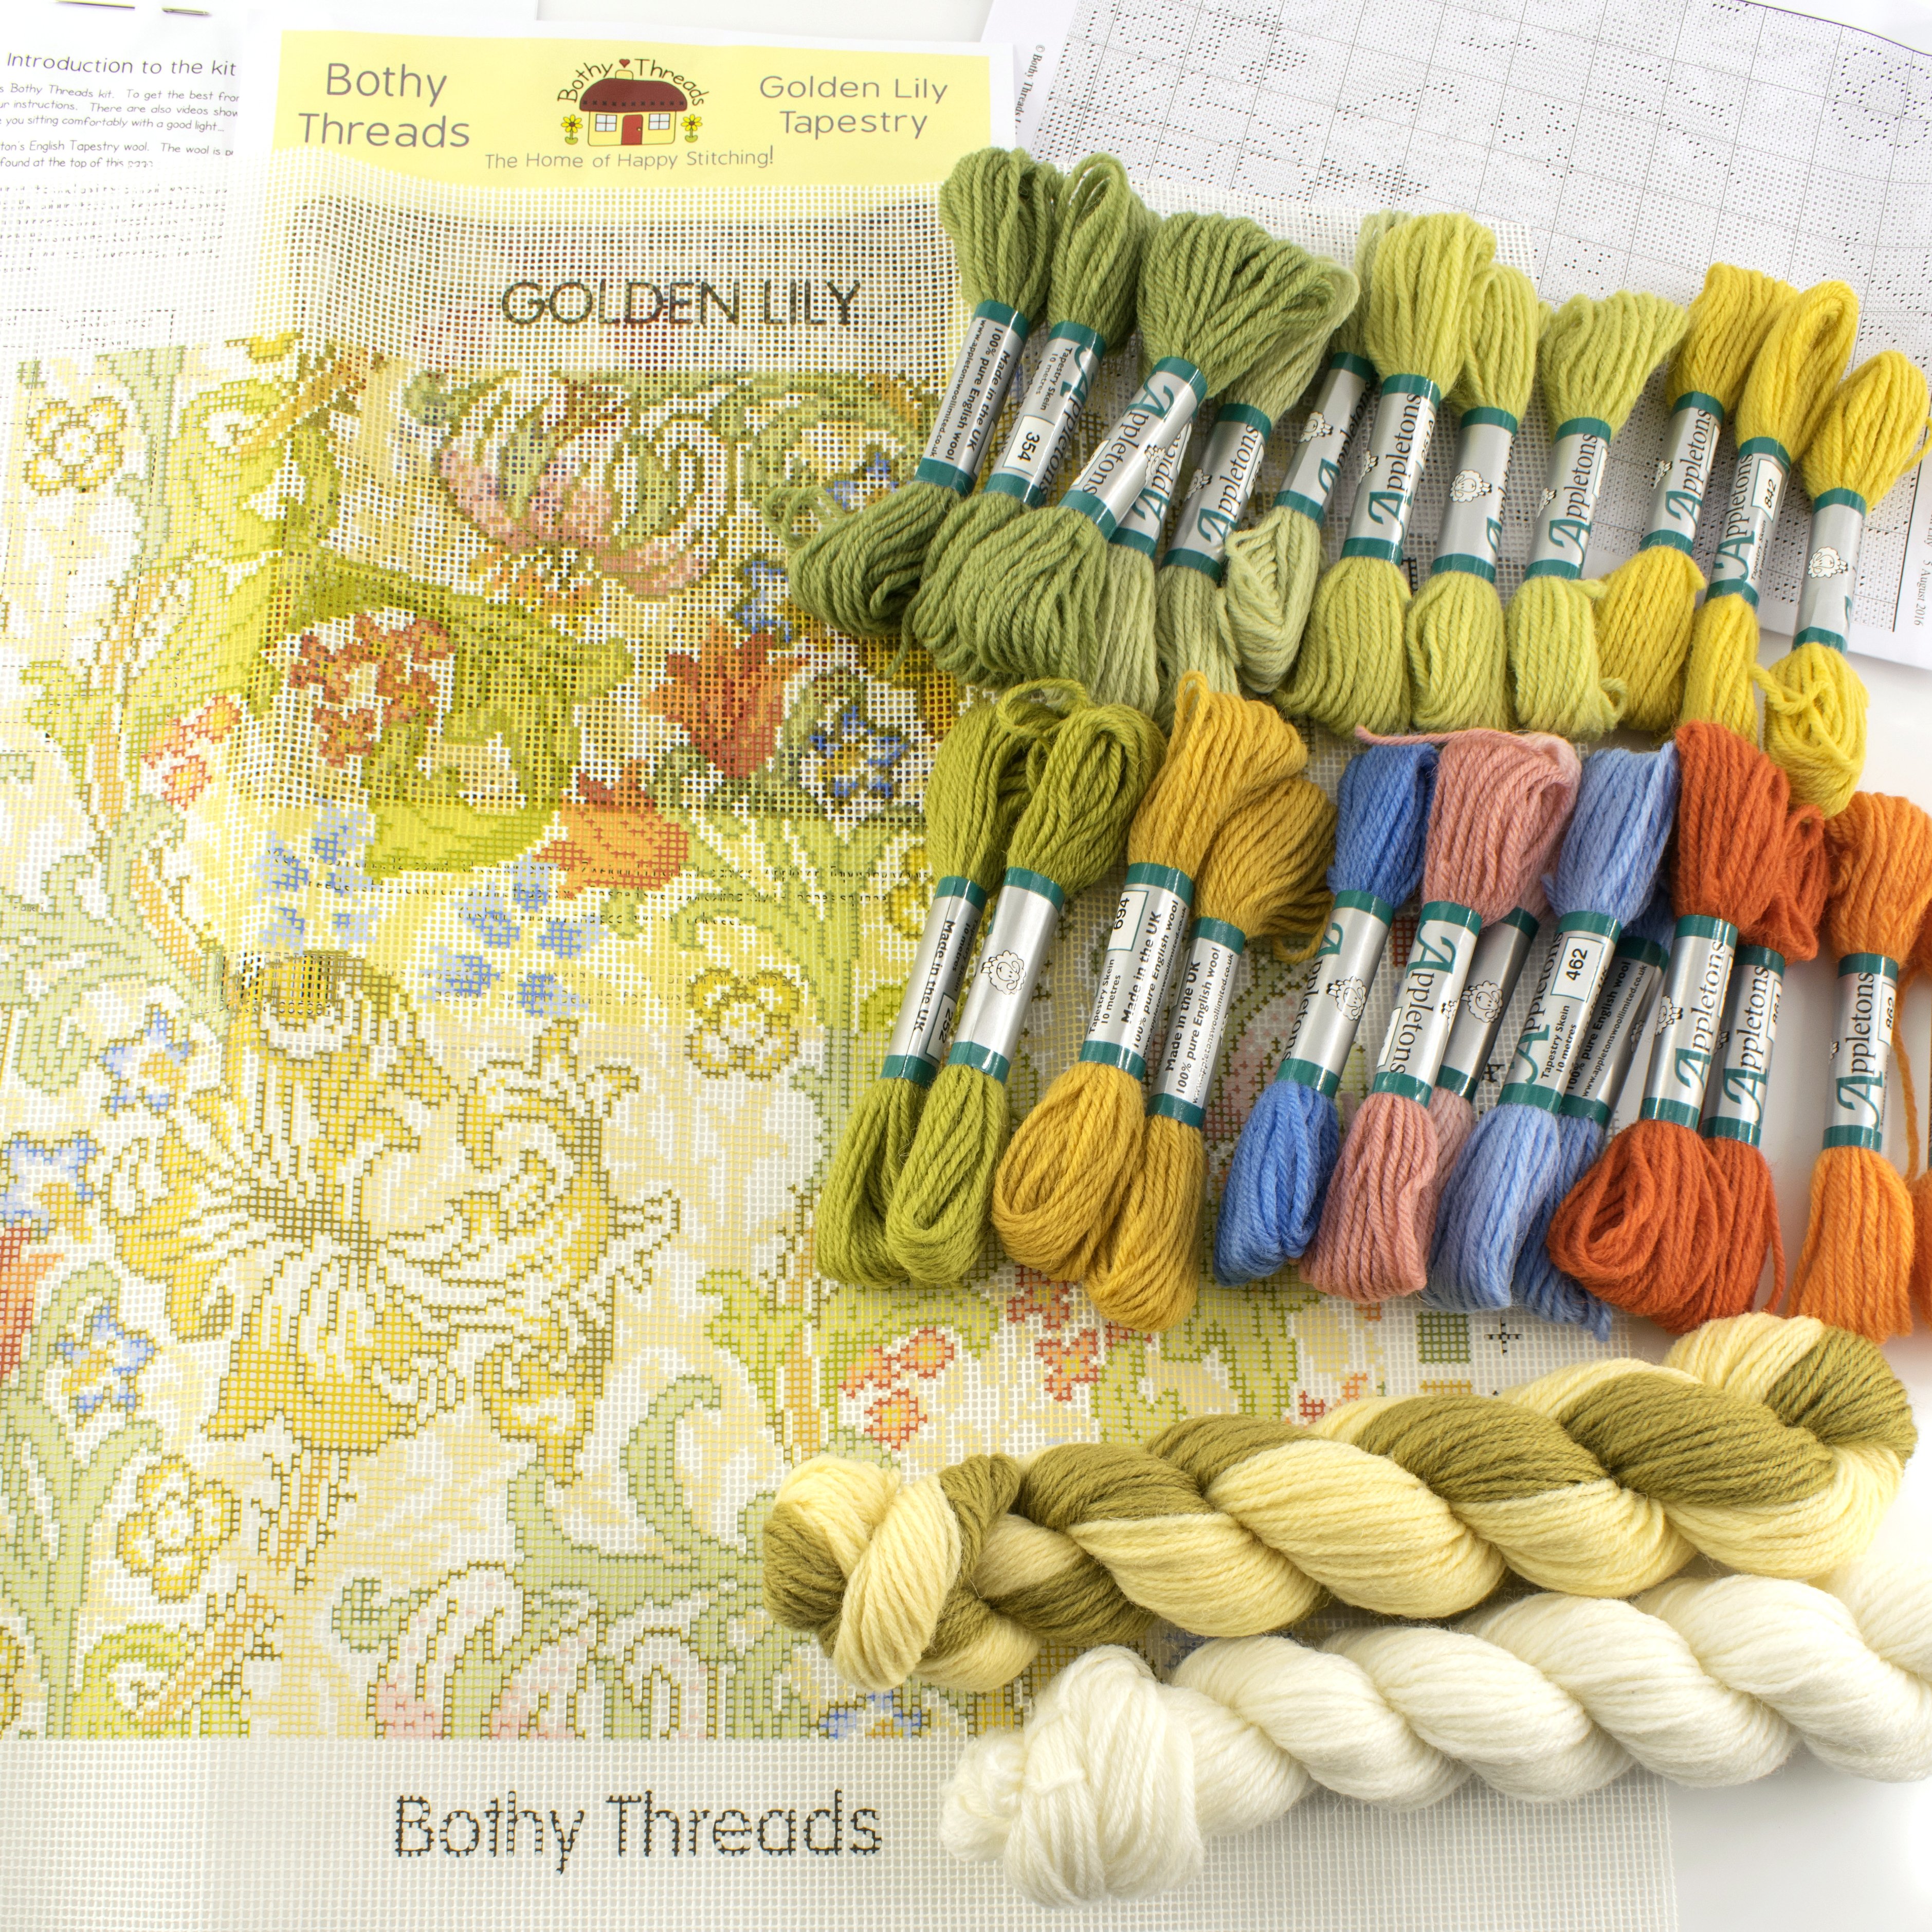 Наборы для вышивания Bothy Threads как отдельный вид искусства